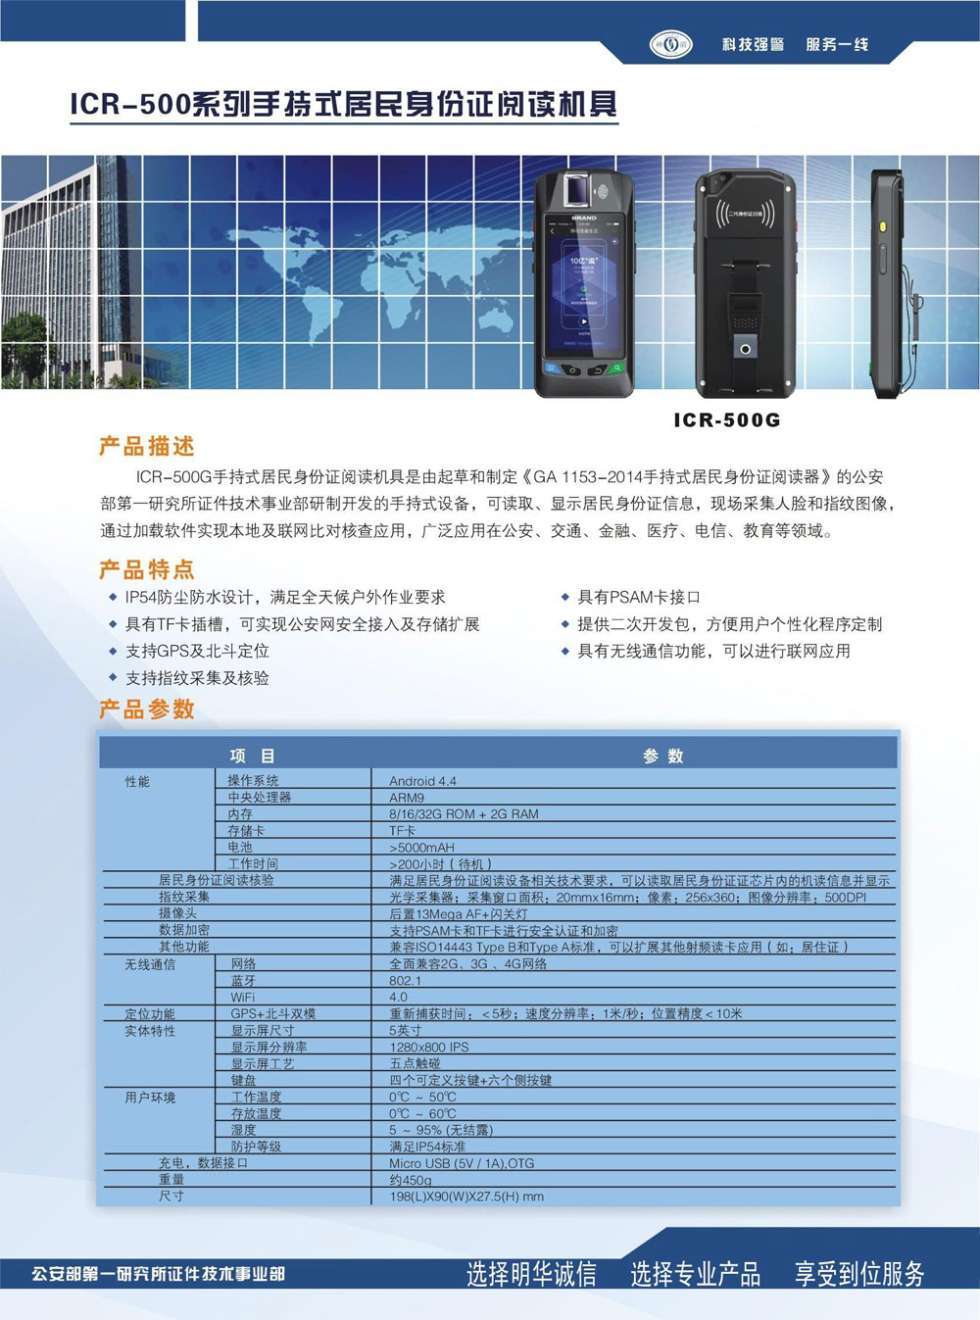 神盾ICR-500G手持式身份证阅读器